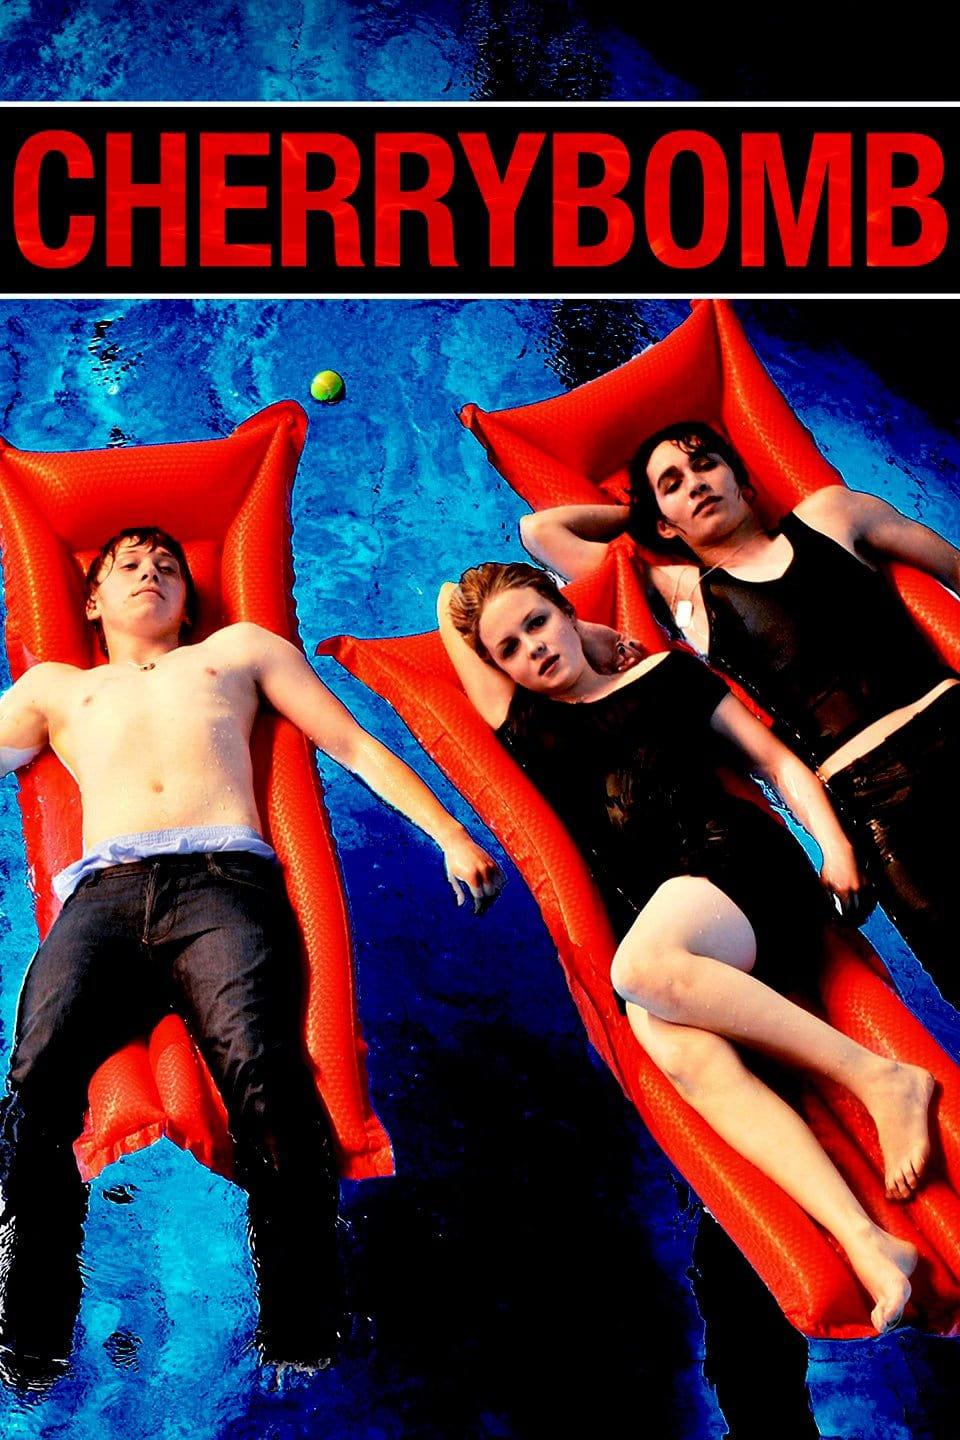 Cherrybomb poster